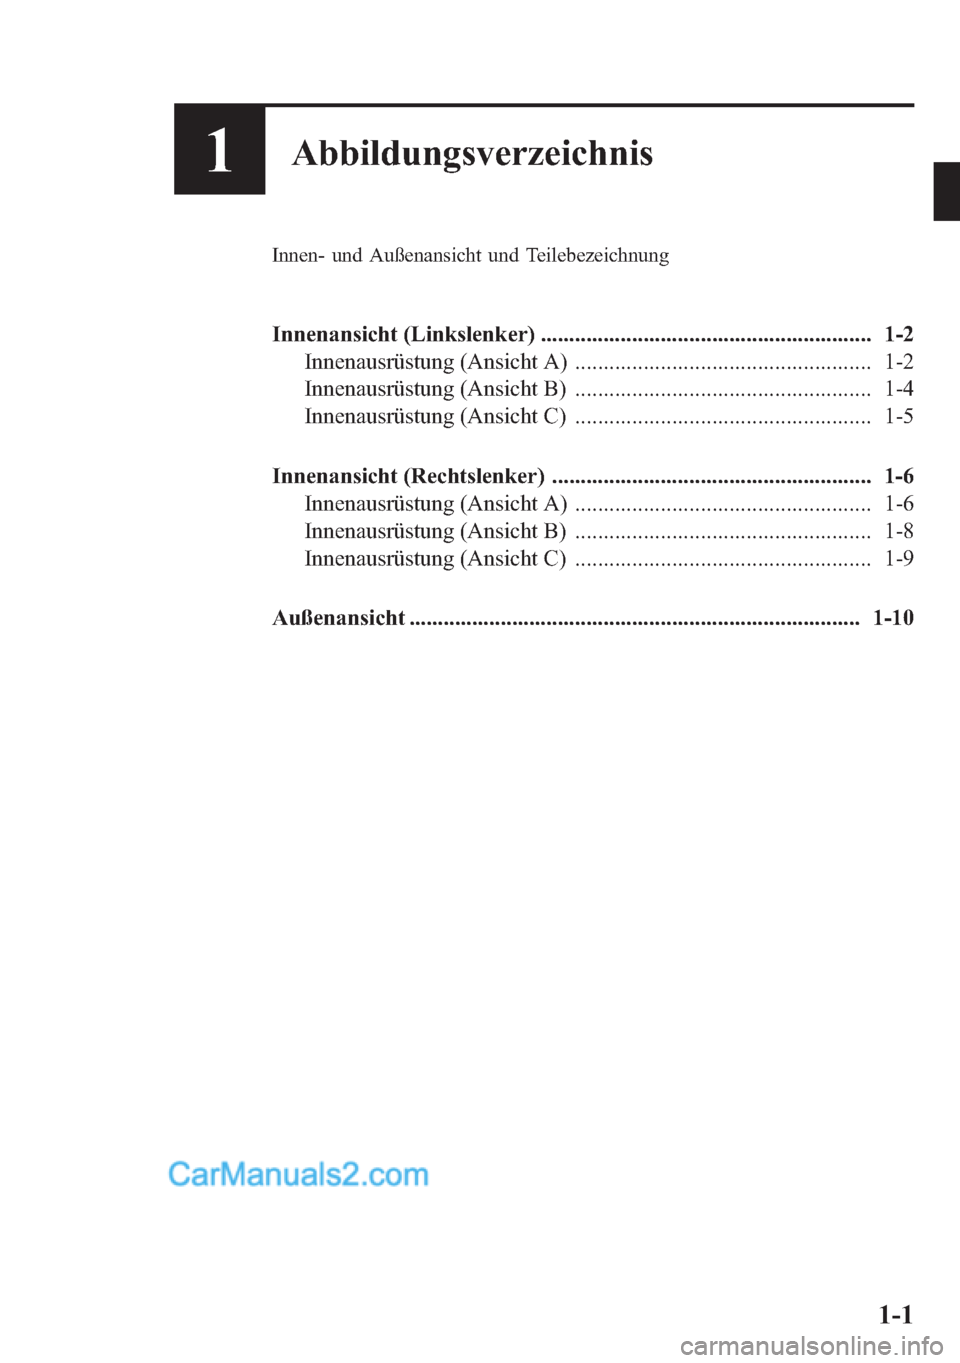 MAZDA MODEL CX-5 2015  Betriebsanleitung (in German) 1Abbildungsverzeichnis
Innen- und Außenansicht und Teilebezeichnung
Innenansicht (Linkslenker) .......................................................... 1-2
Innenausrüstung (Ansicht A) ............